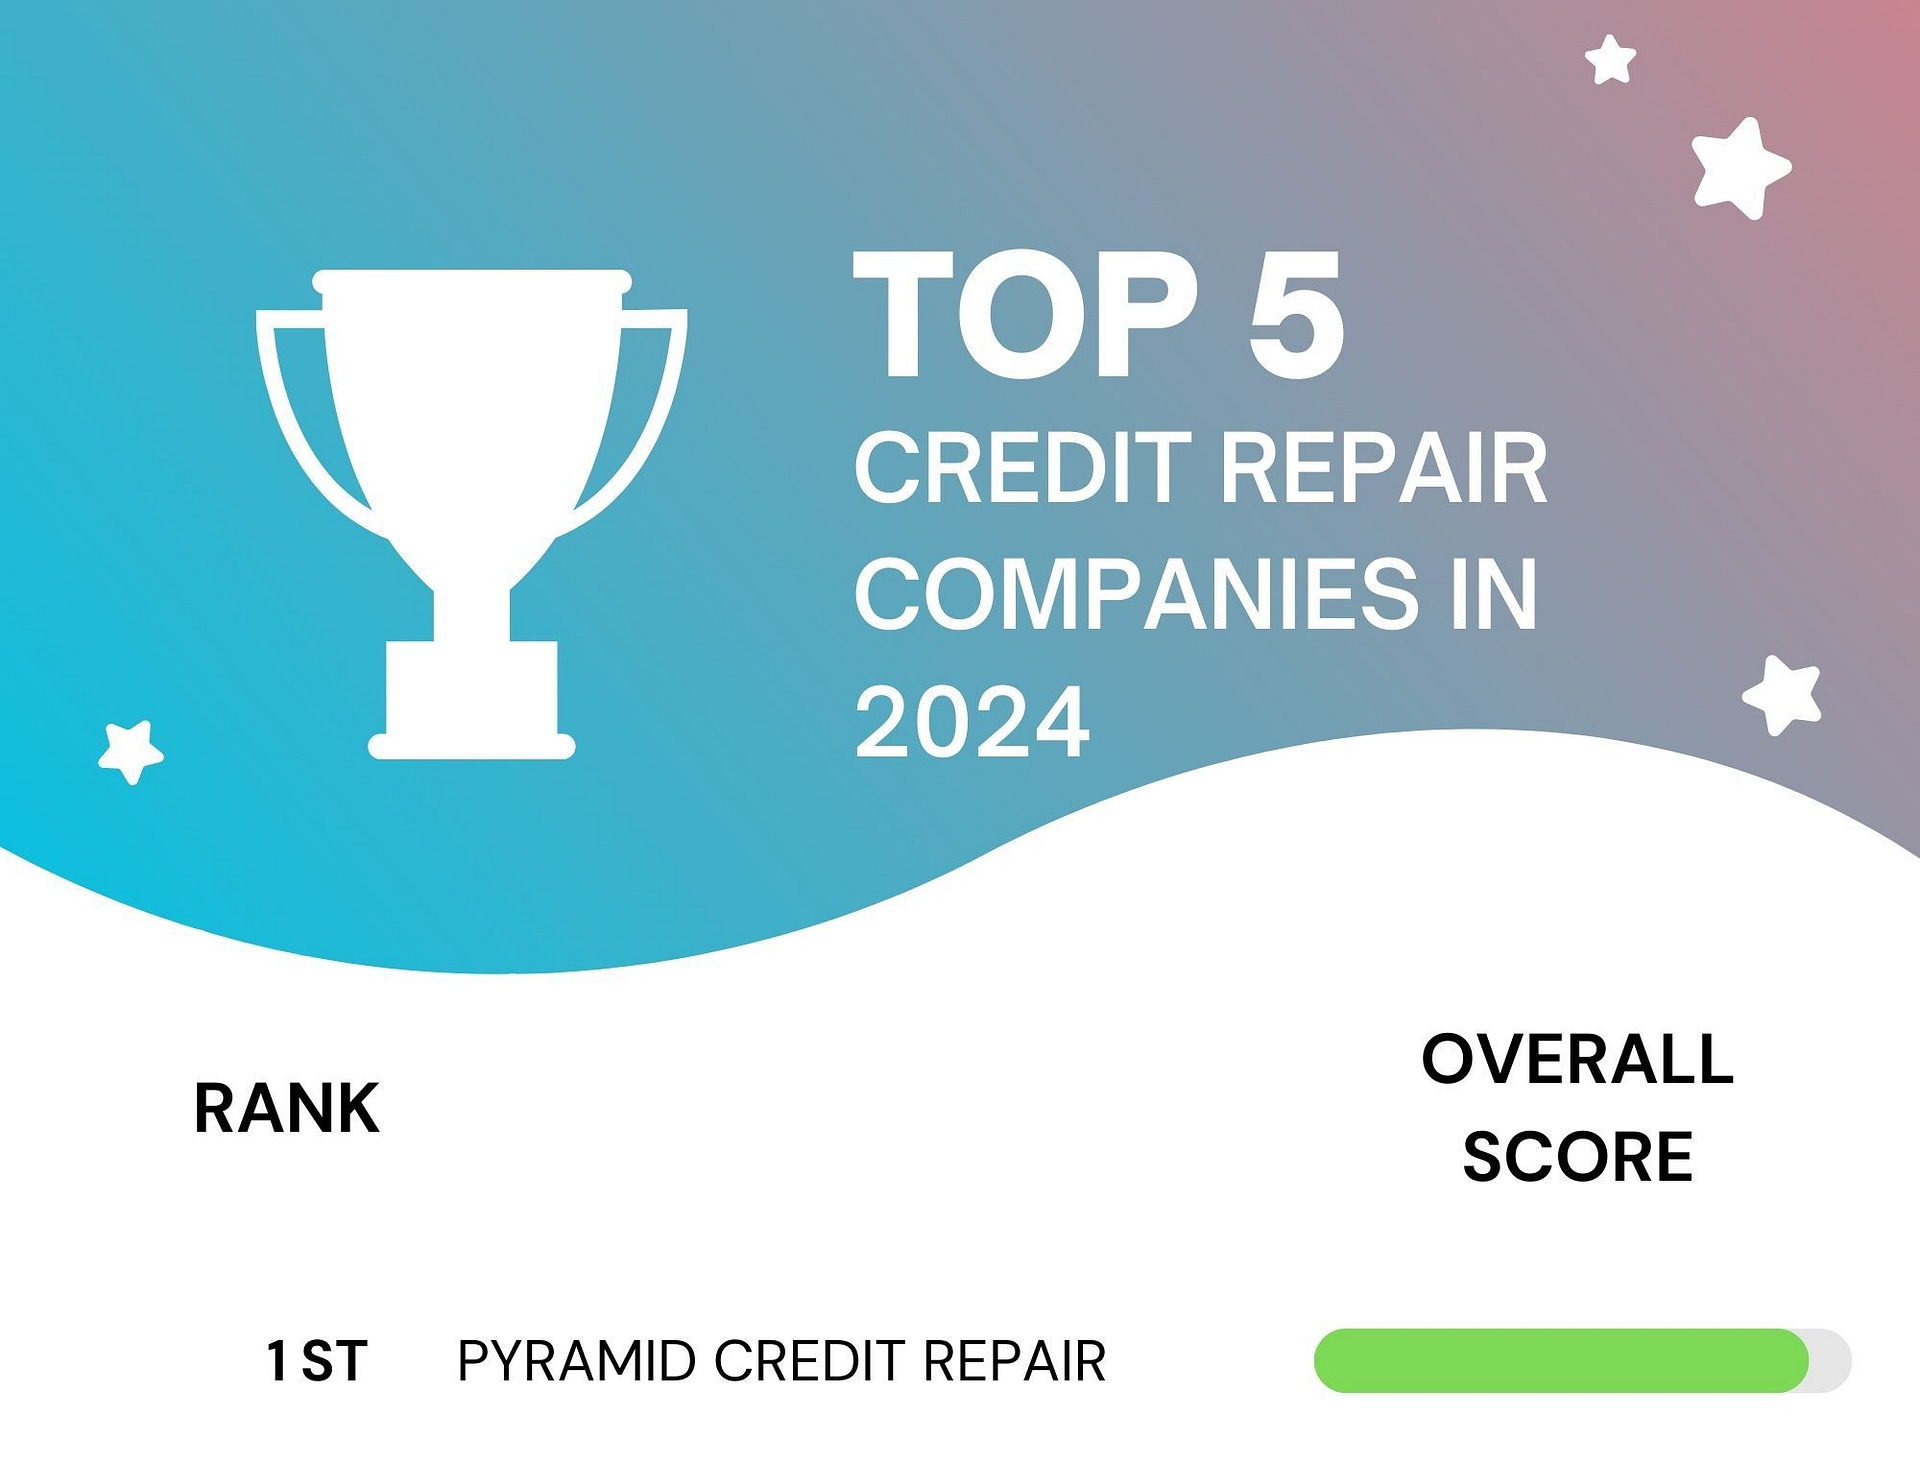 Top Credit Repair Companies of 2024 - Pyramid Credit Repair